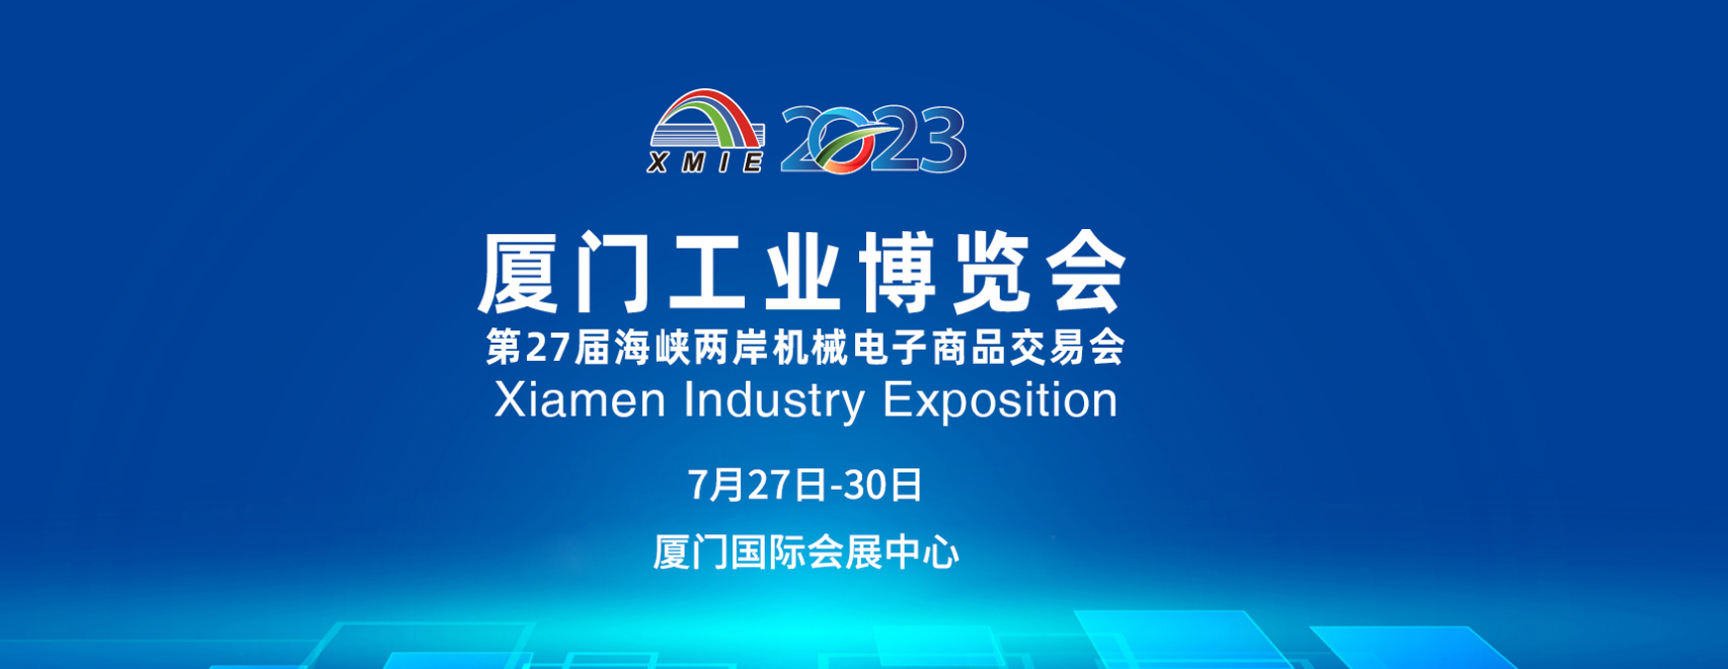 2023厦门工业博览会7月27日将开幕